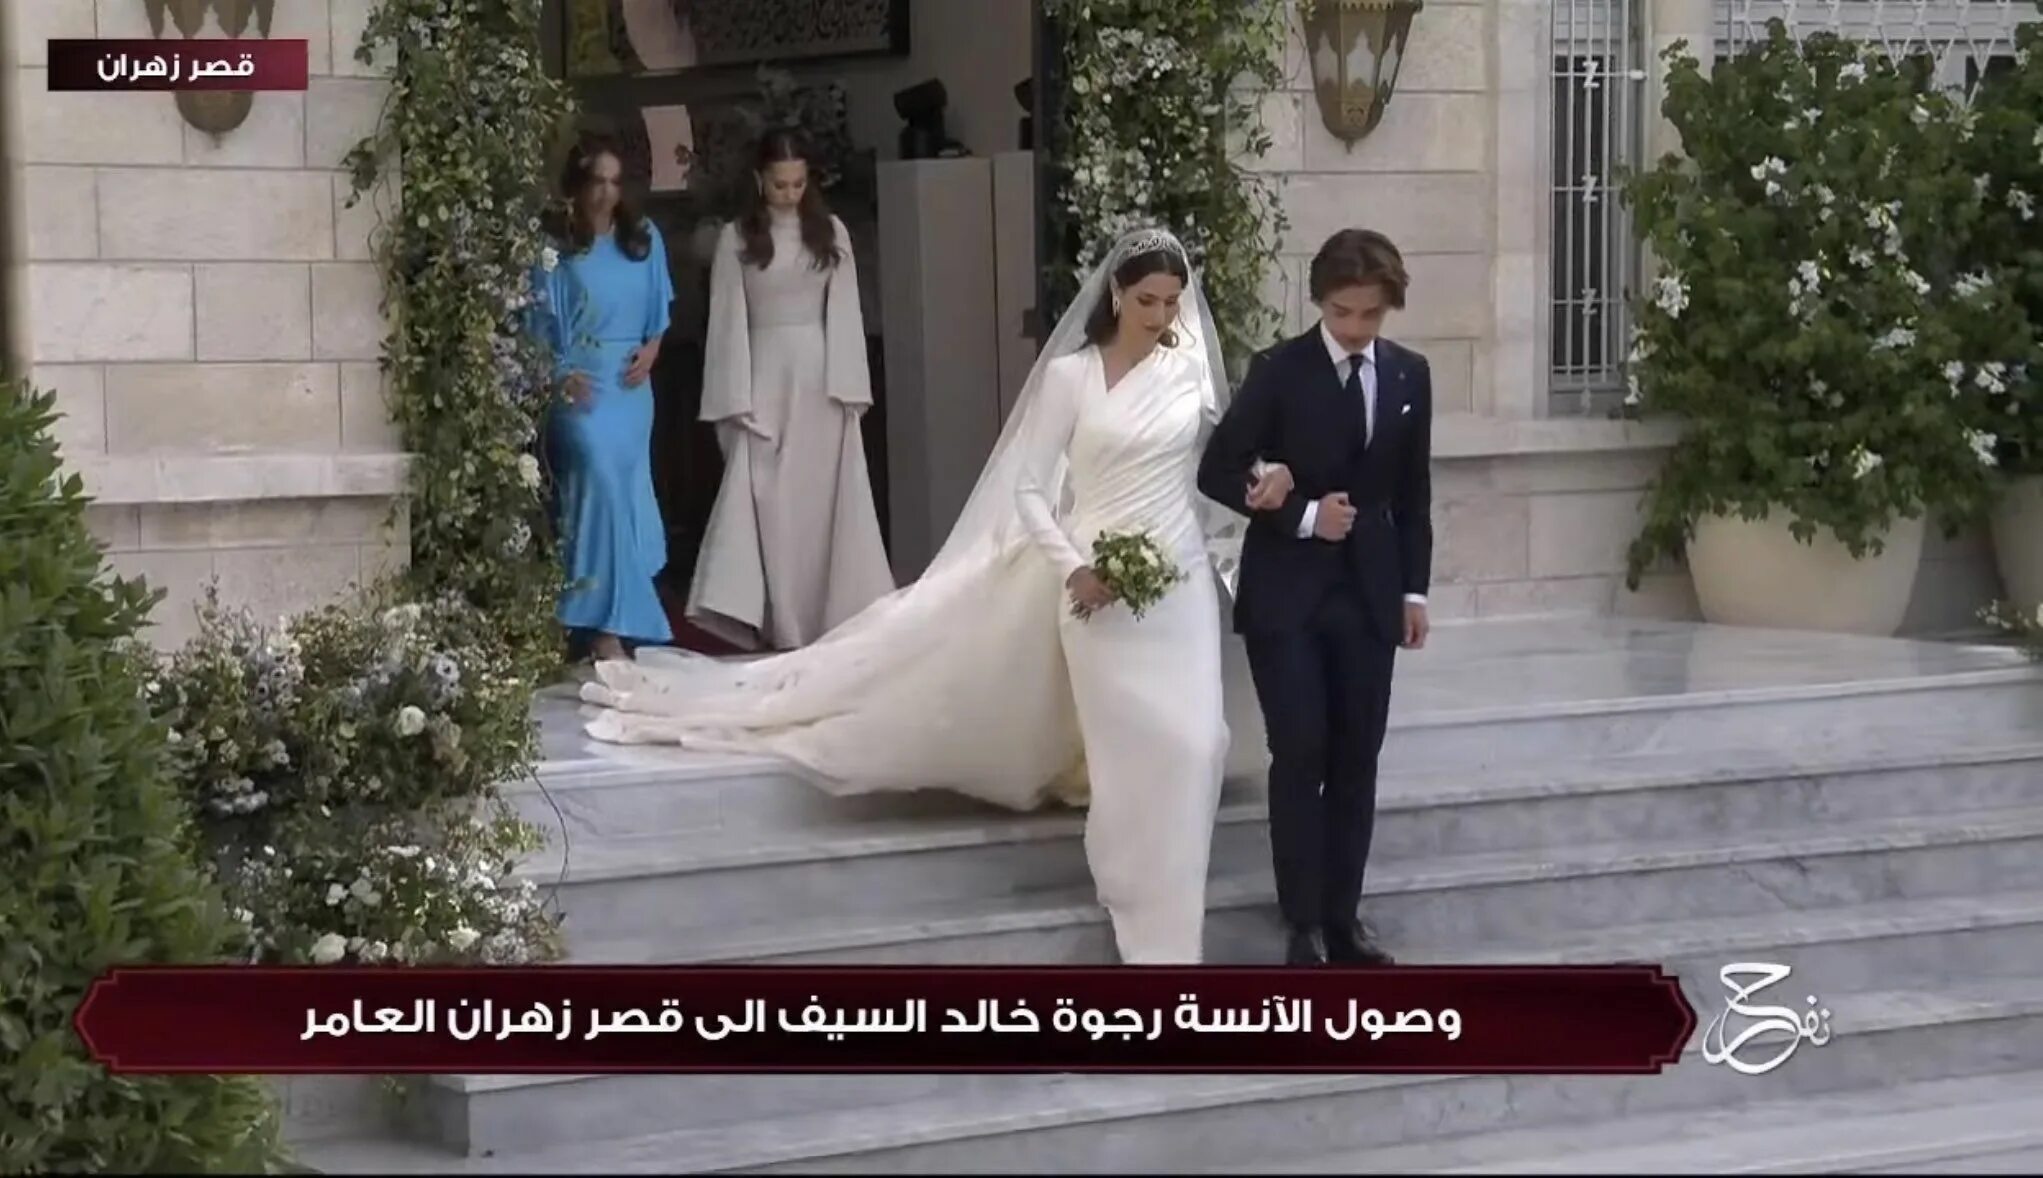 Выйти замуж за наследного принца. Свадьба в Иордании наследного принца. Свадьба наследного принца Иордании Хусейна. Саудовская Аравия свадьба. Свадьба без цветов.